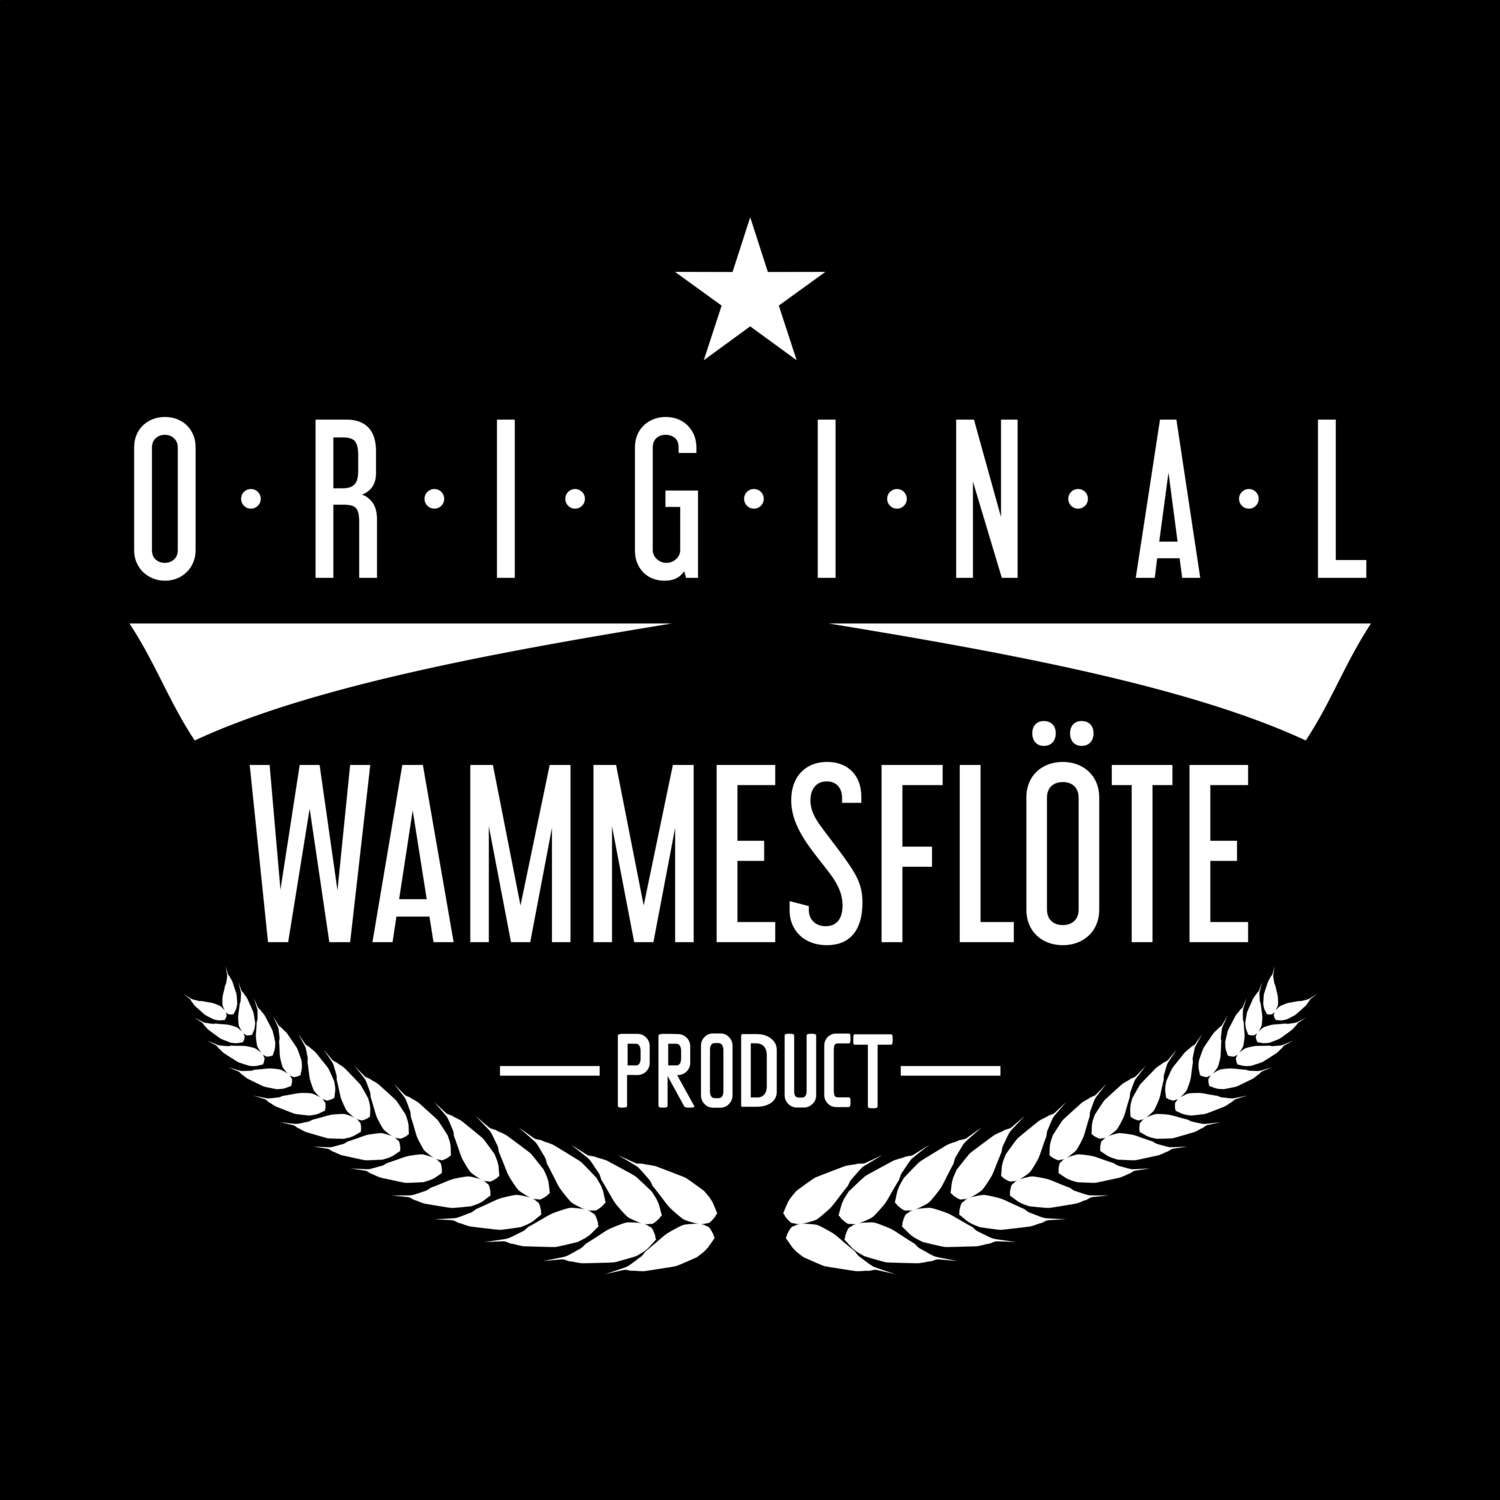 Wammesflöte T-Shirt »Original Product«